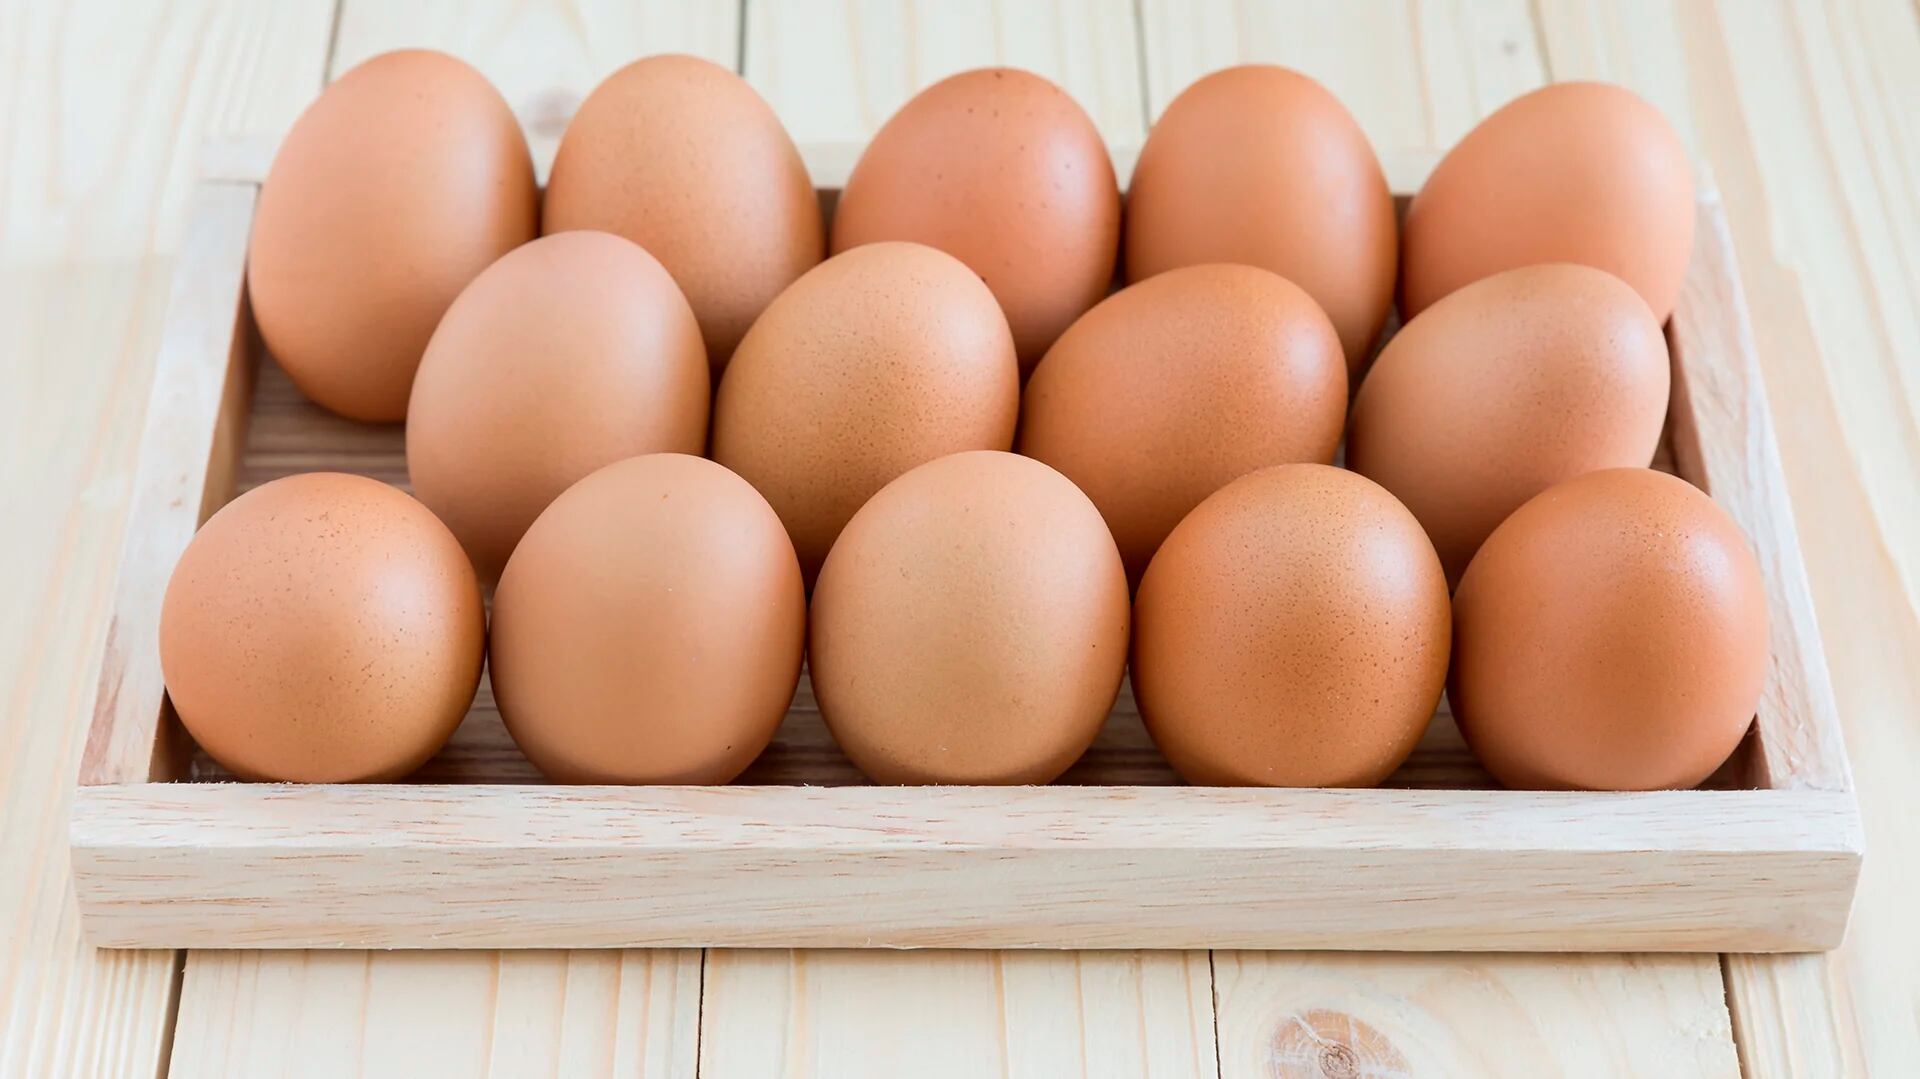 No lavar los huevos antes de ponerlos en la heladera (Shutterstock)